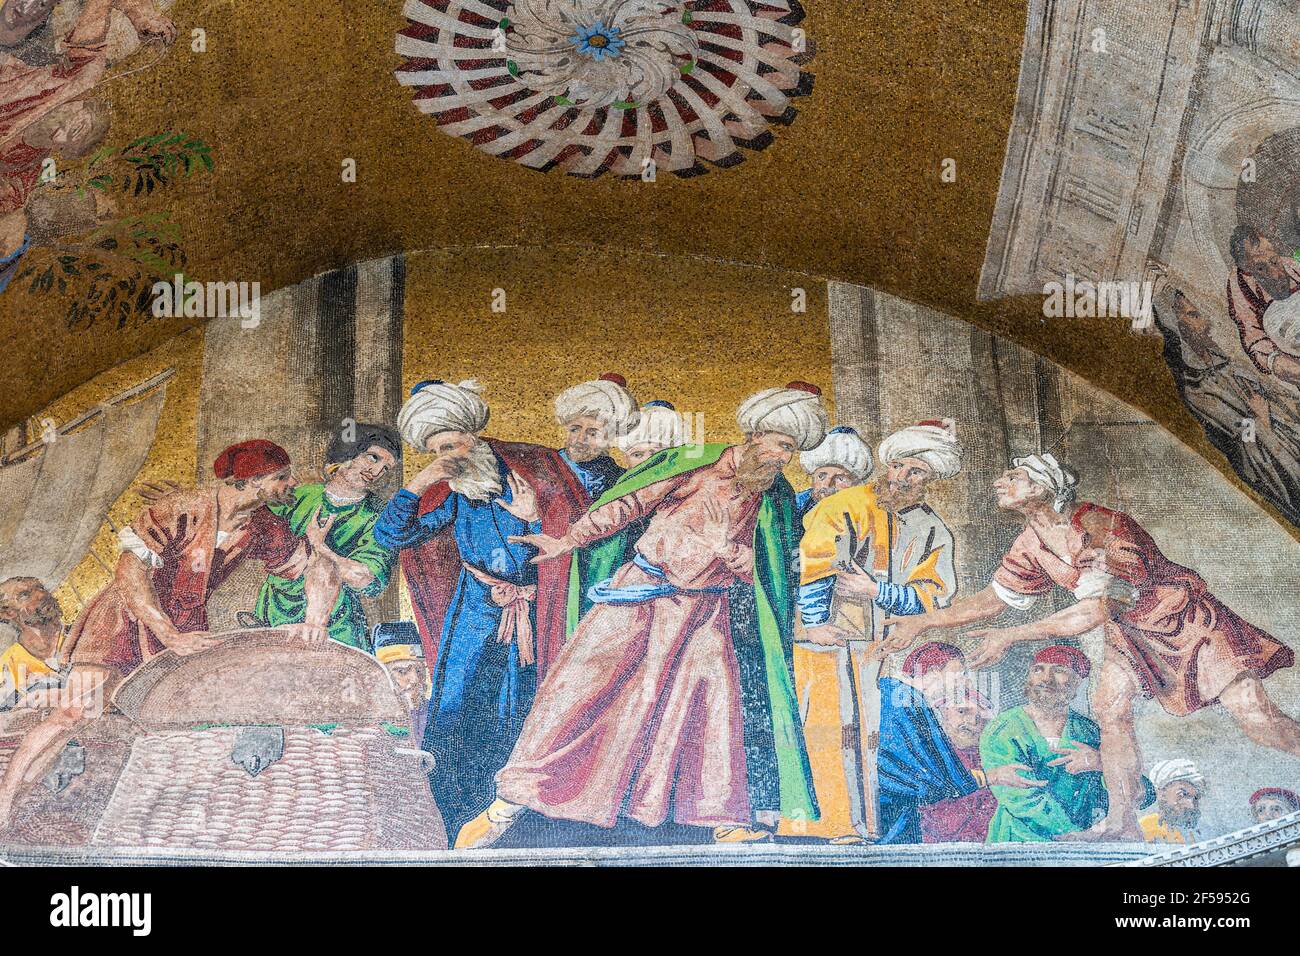 Venedig, Italien - Juni 23 2020: Eine Nahaufnahme des 'Diebstahls des Leibes des heiligen Markus aus Alexandria' Mosaic, das die Außenseite des heiligen M ornaates Stockfoto